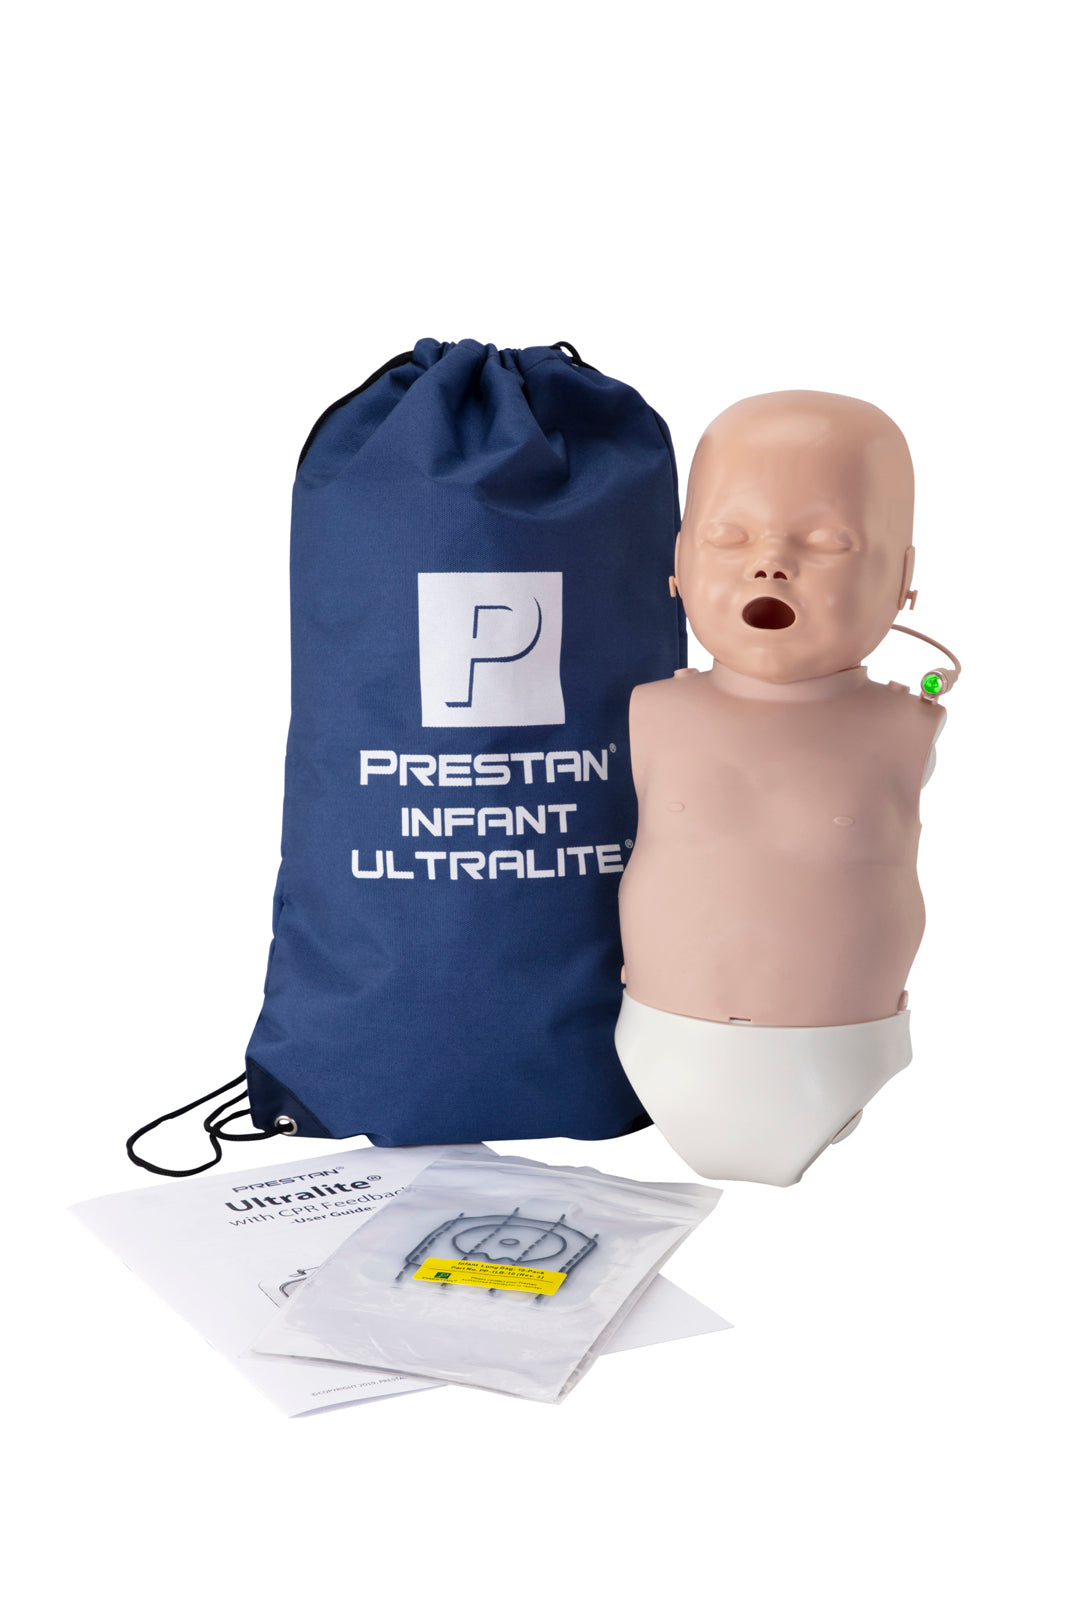 PRESTAN Infant Ultralite Manikin with CPR Feedback | Single